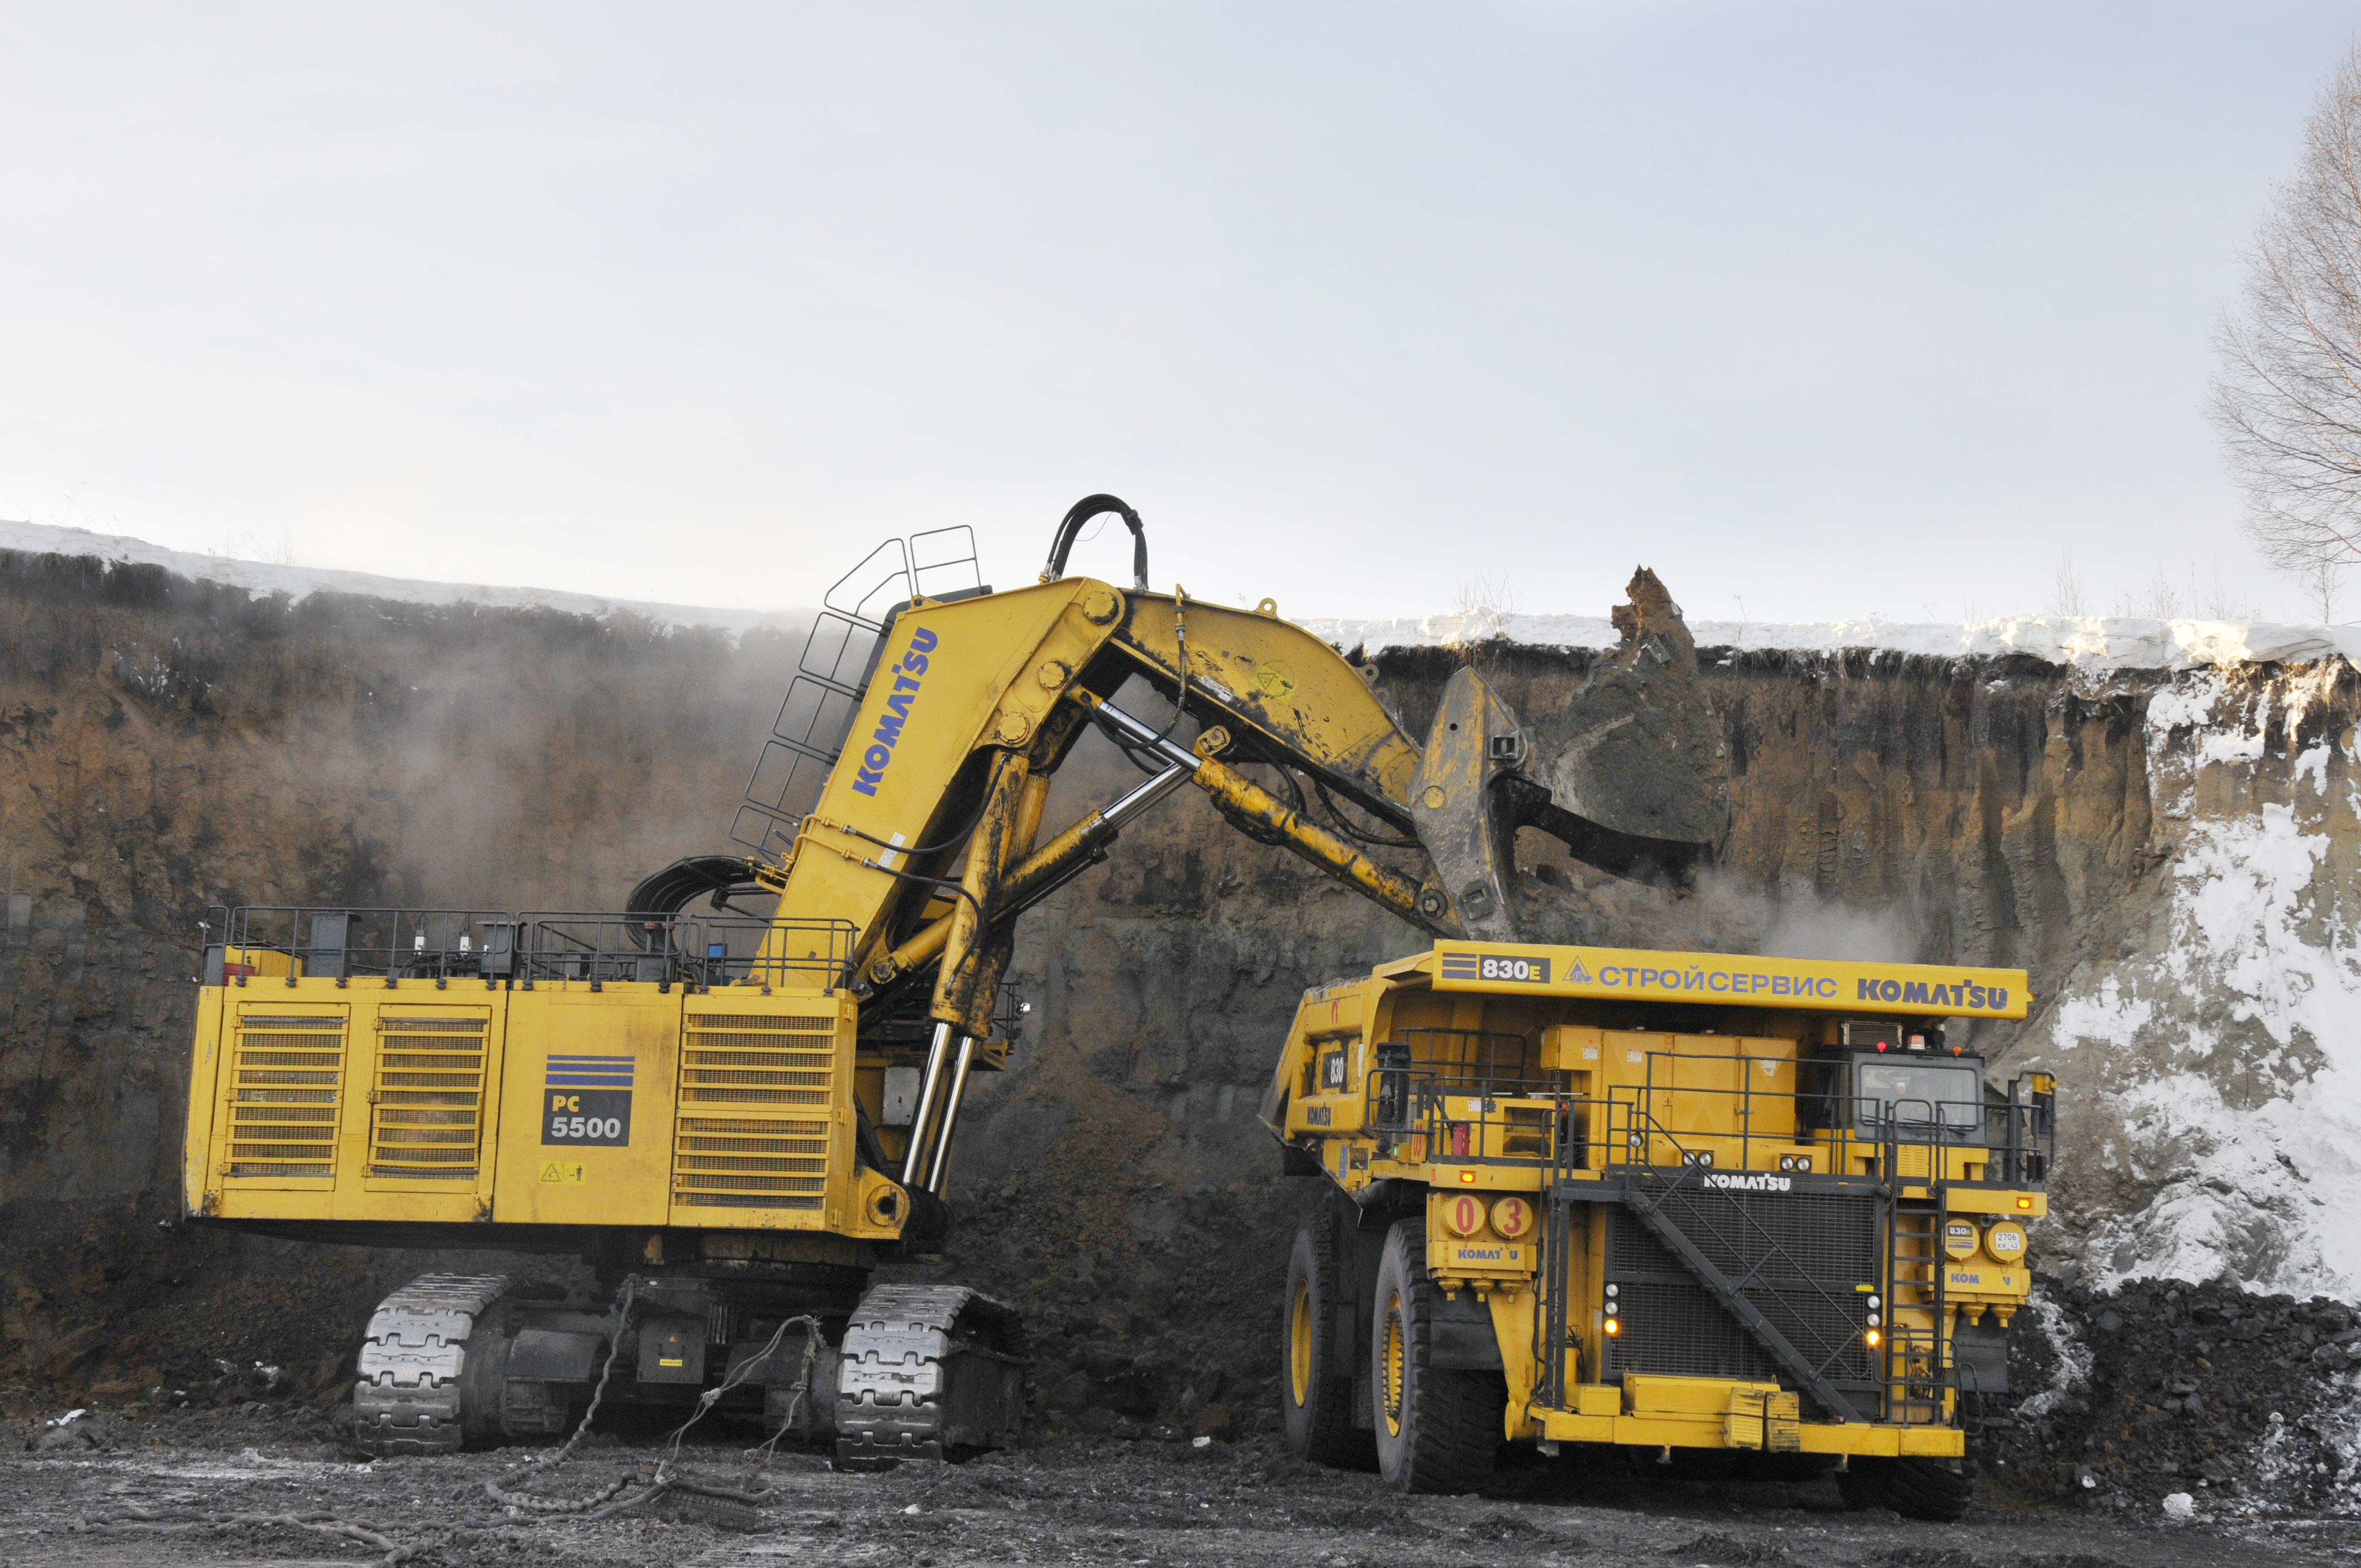 С начала года горняки Стройсервиса добыли 11,7 млн. тонн угля. Стройсервис